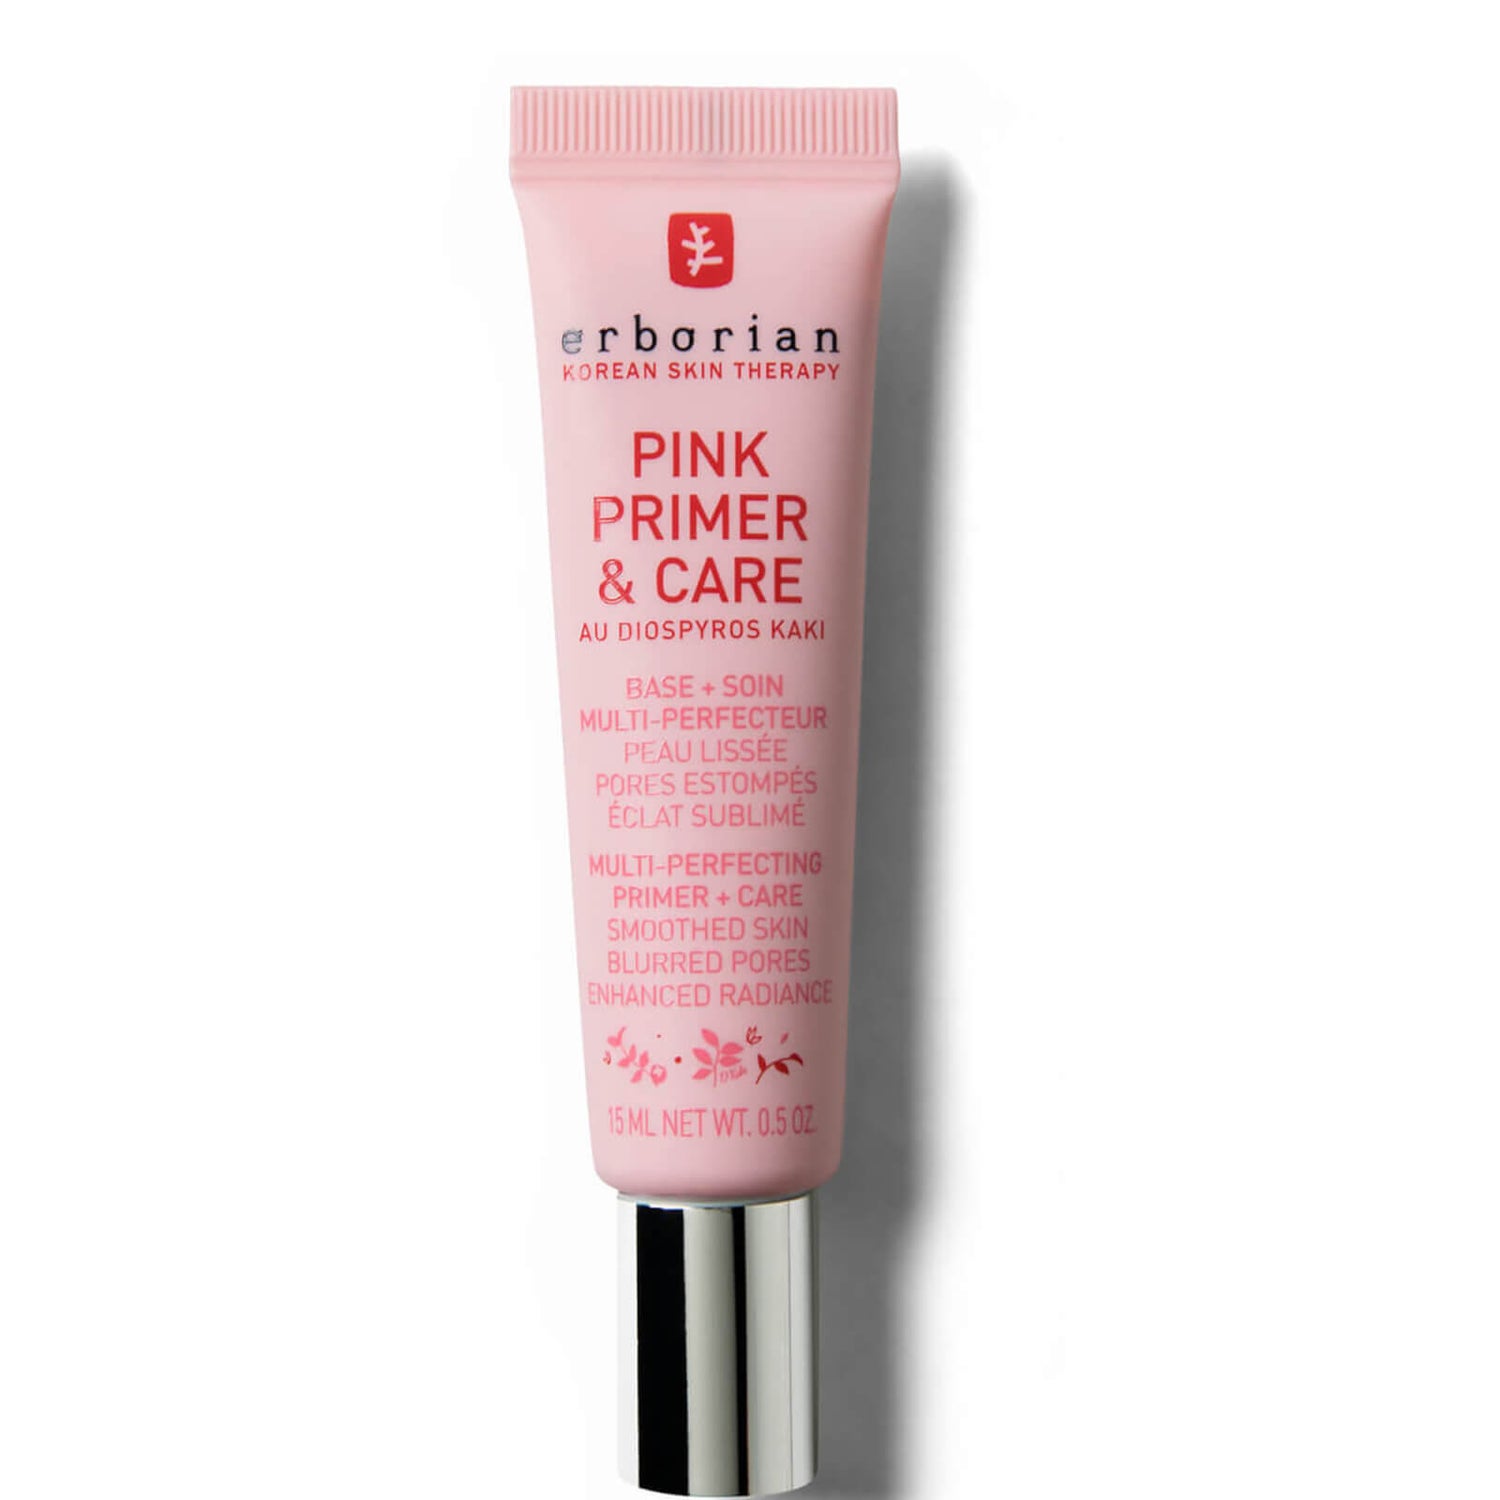 Pink Primer 15ml - Szybko wchłaniający się, zmniejszający pory, nawilżający krem i primer dla wszystkich typów skóry